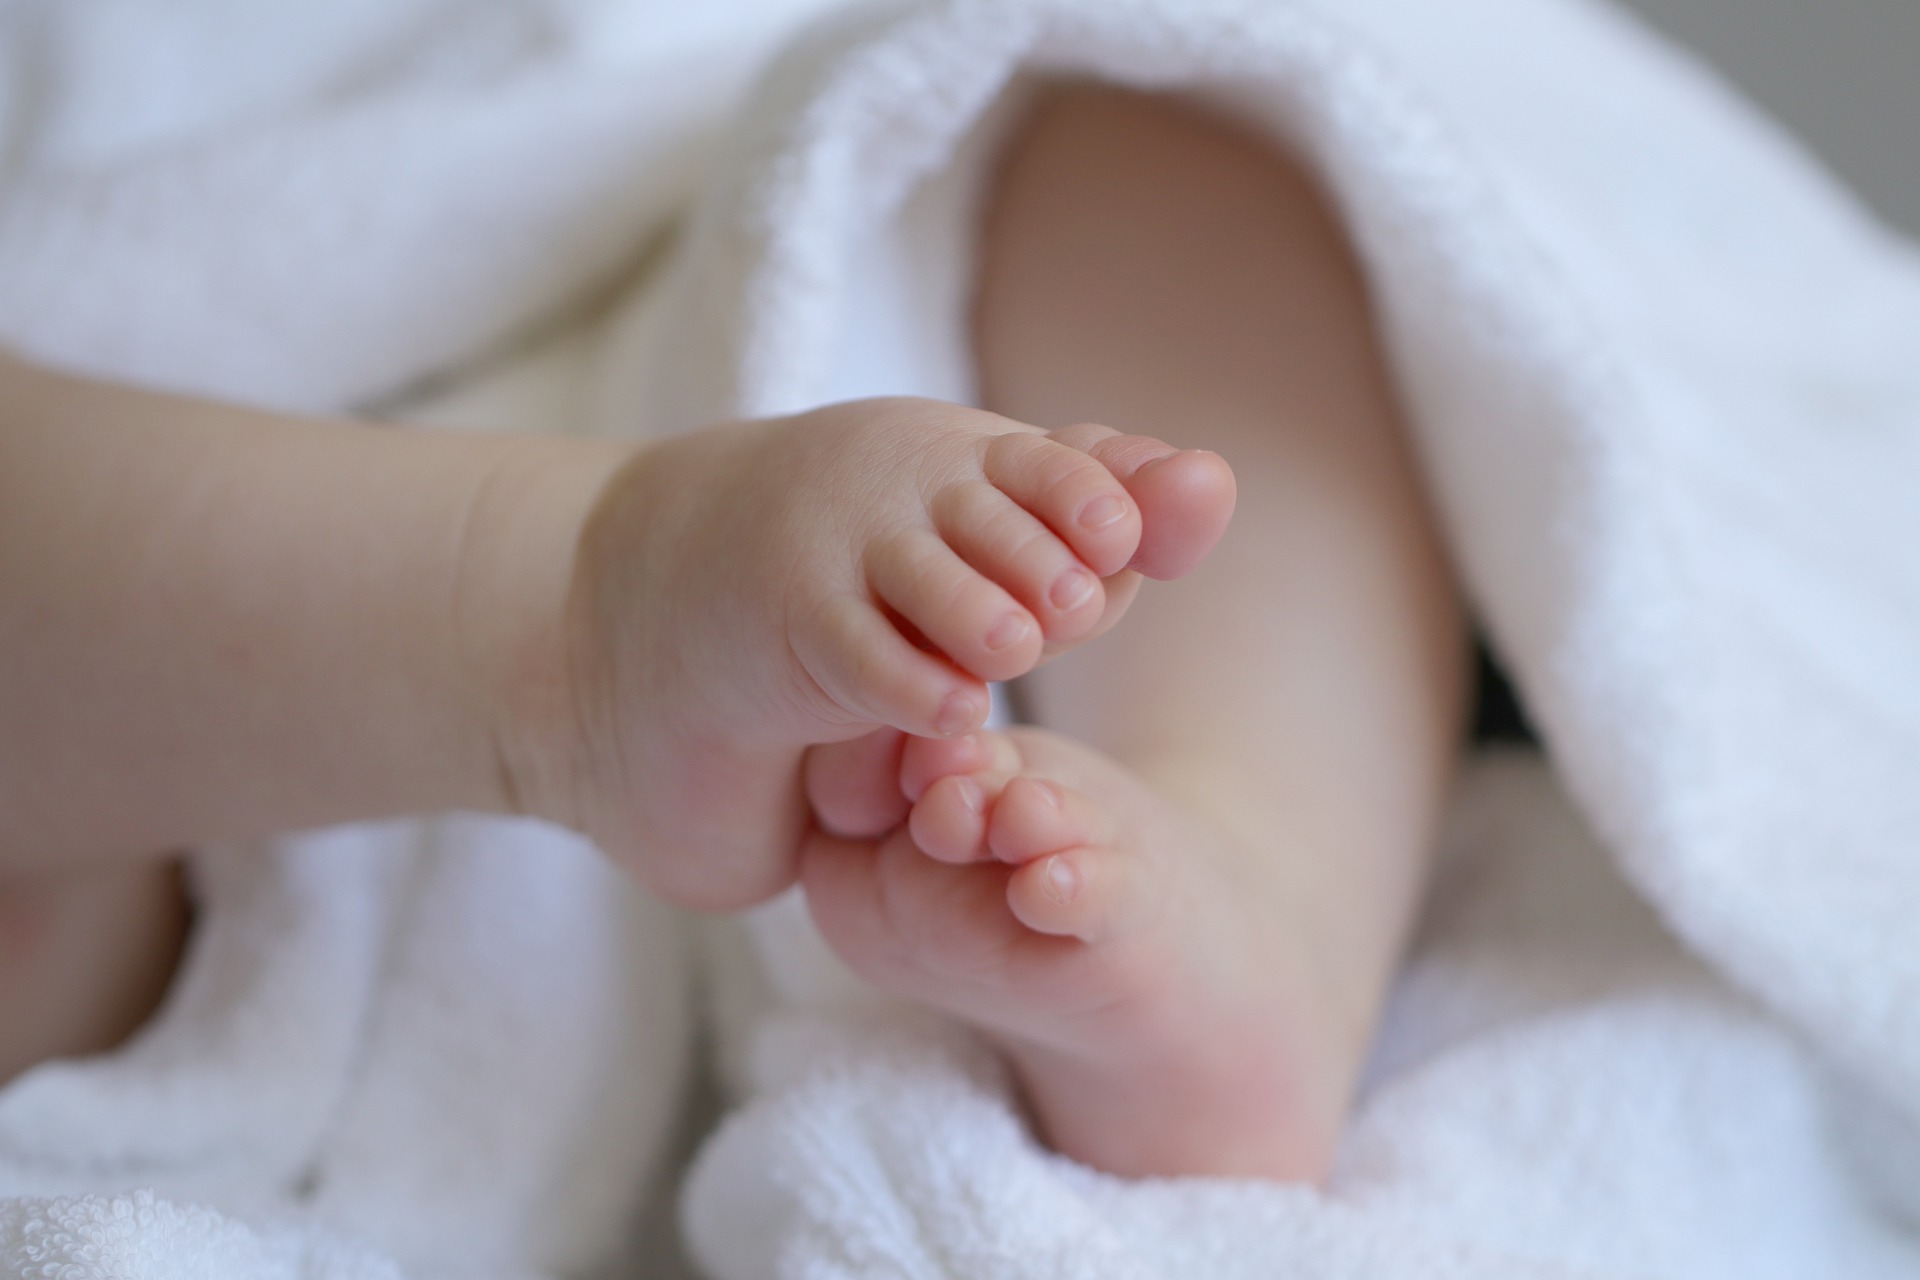 Megszólalt a nyíregyházi kórház a két kismama haláláról